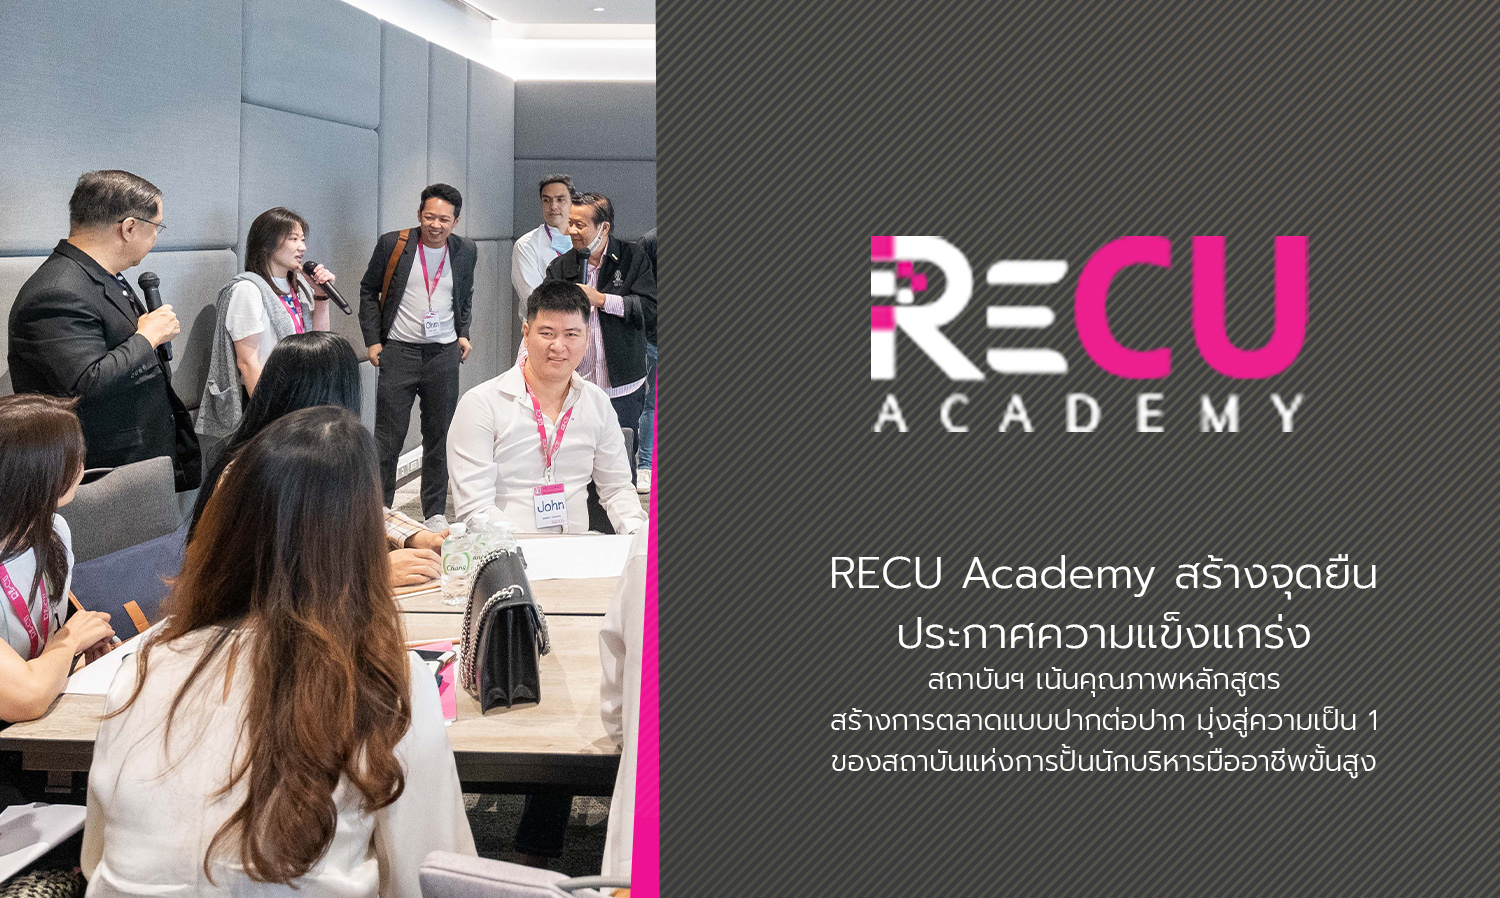 RECU Academy สร้างจุดยืน ประกาศความแข็งแกร่งสถาบันฯ เน้นคุณภาพหลักสูตร สร้างการตลาดแบบปากต่อปาก มุ่งสู่ความเป็น 1 ของสถาบันแห่งการปั้นนักบริหารมืออาชีพขั้นสูง